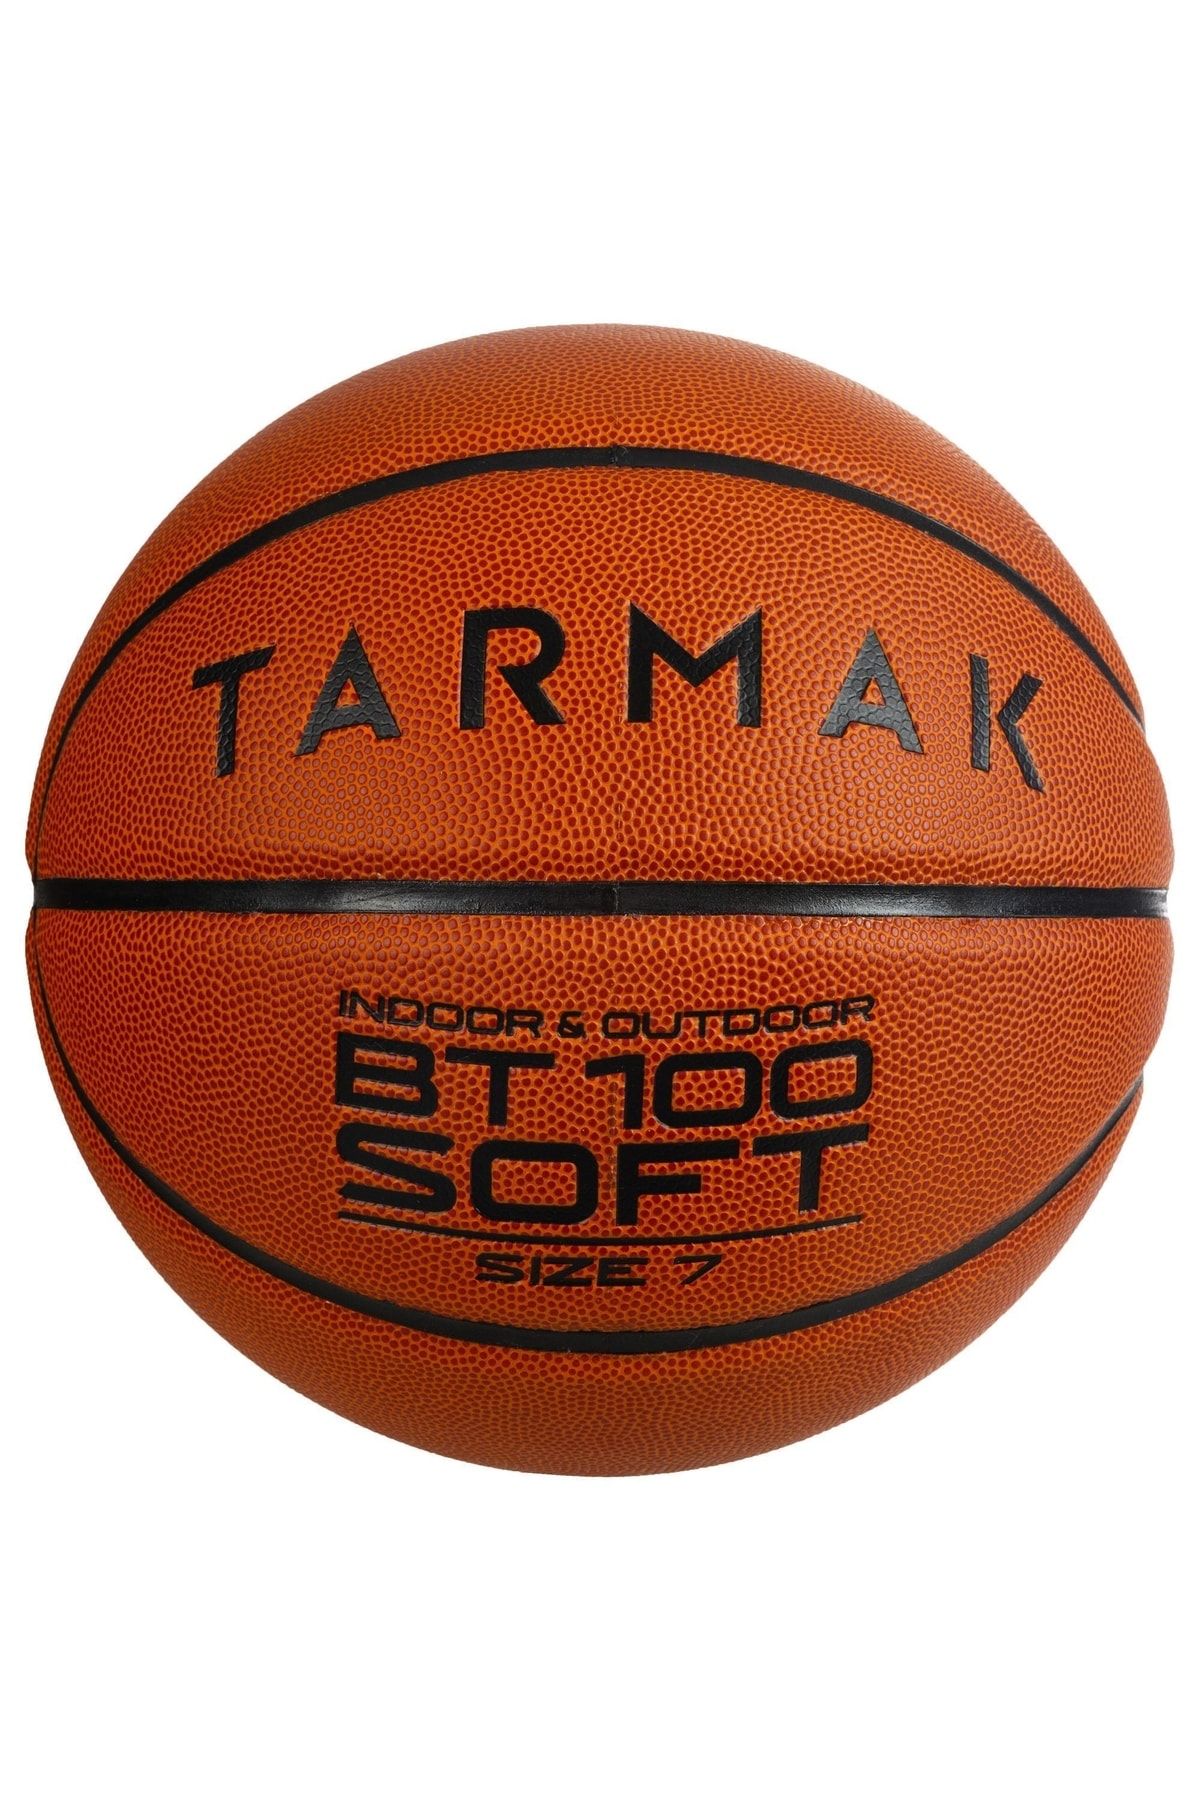 Decathlon Tarmak Basketbol Topu - 7 Numara - Bt100